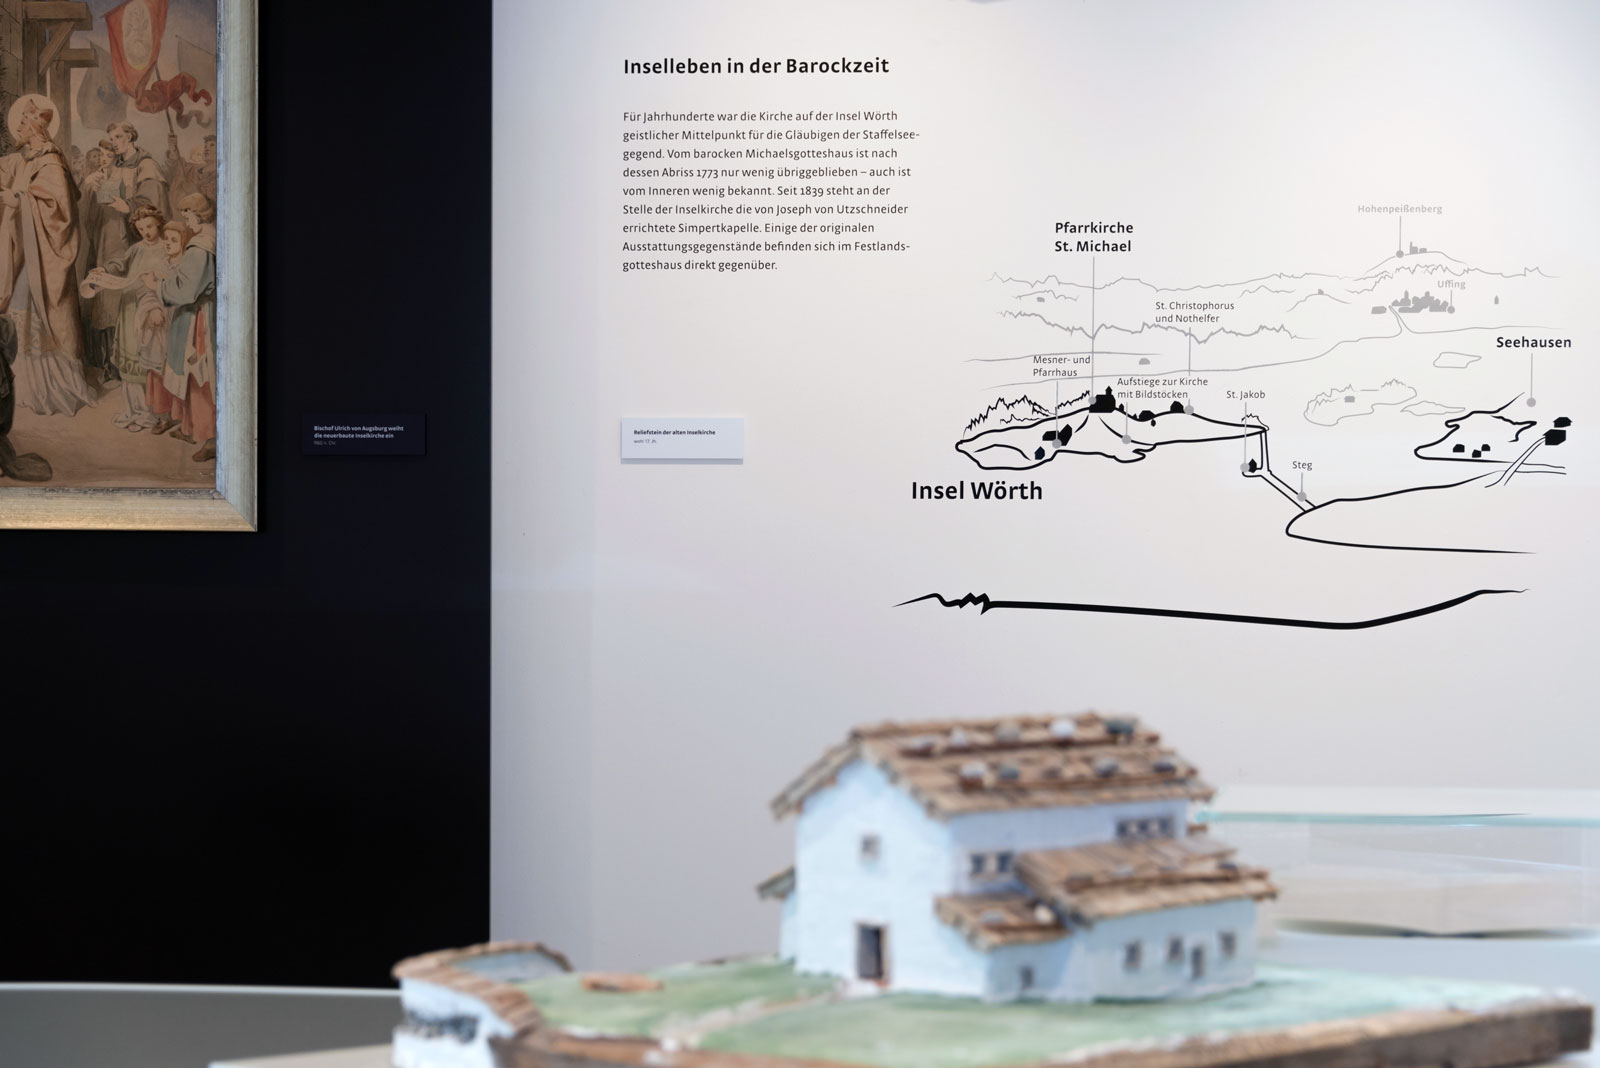 Das Referenzbild für Ausstellungsgestaltung aus der Dauerausstellung Seehausen und der Staffelsee zeigt eine Schablonierung.